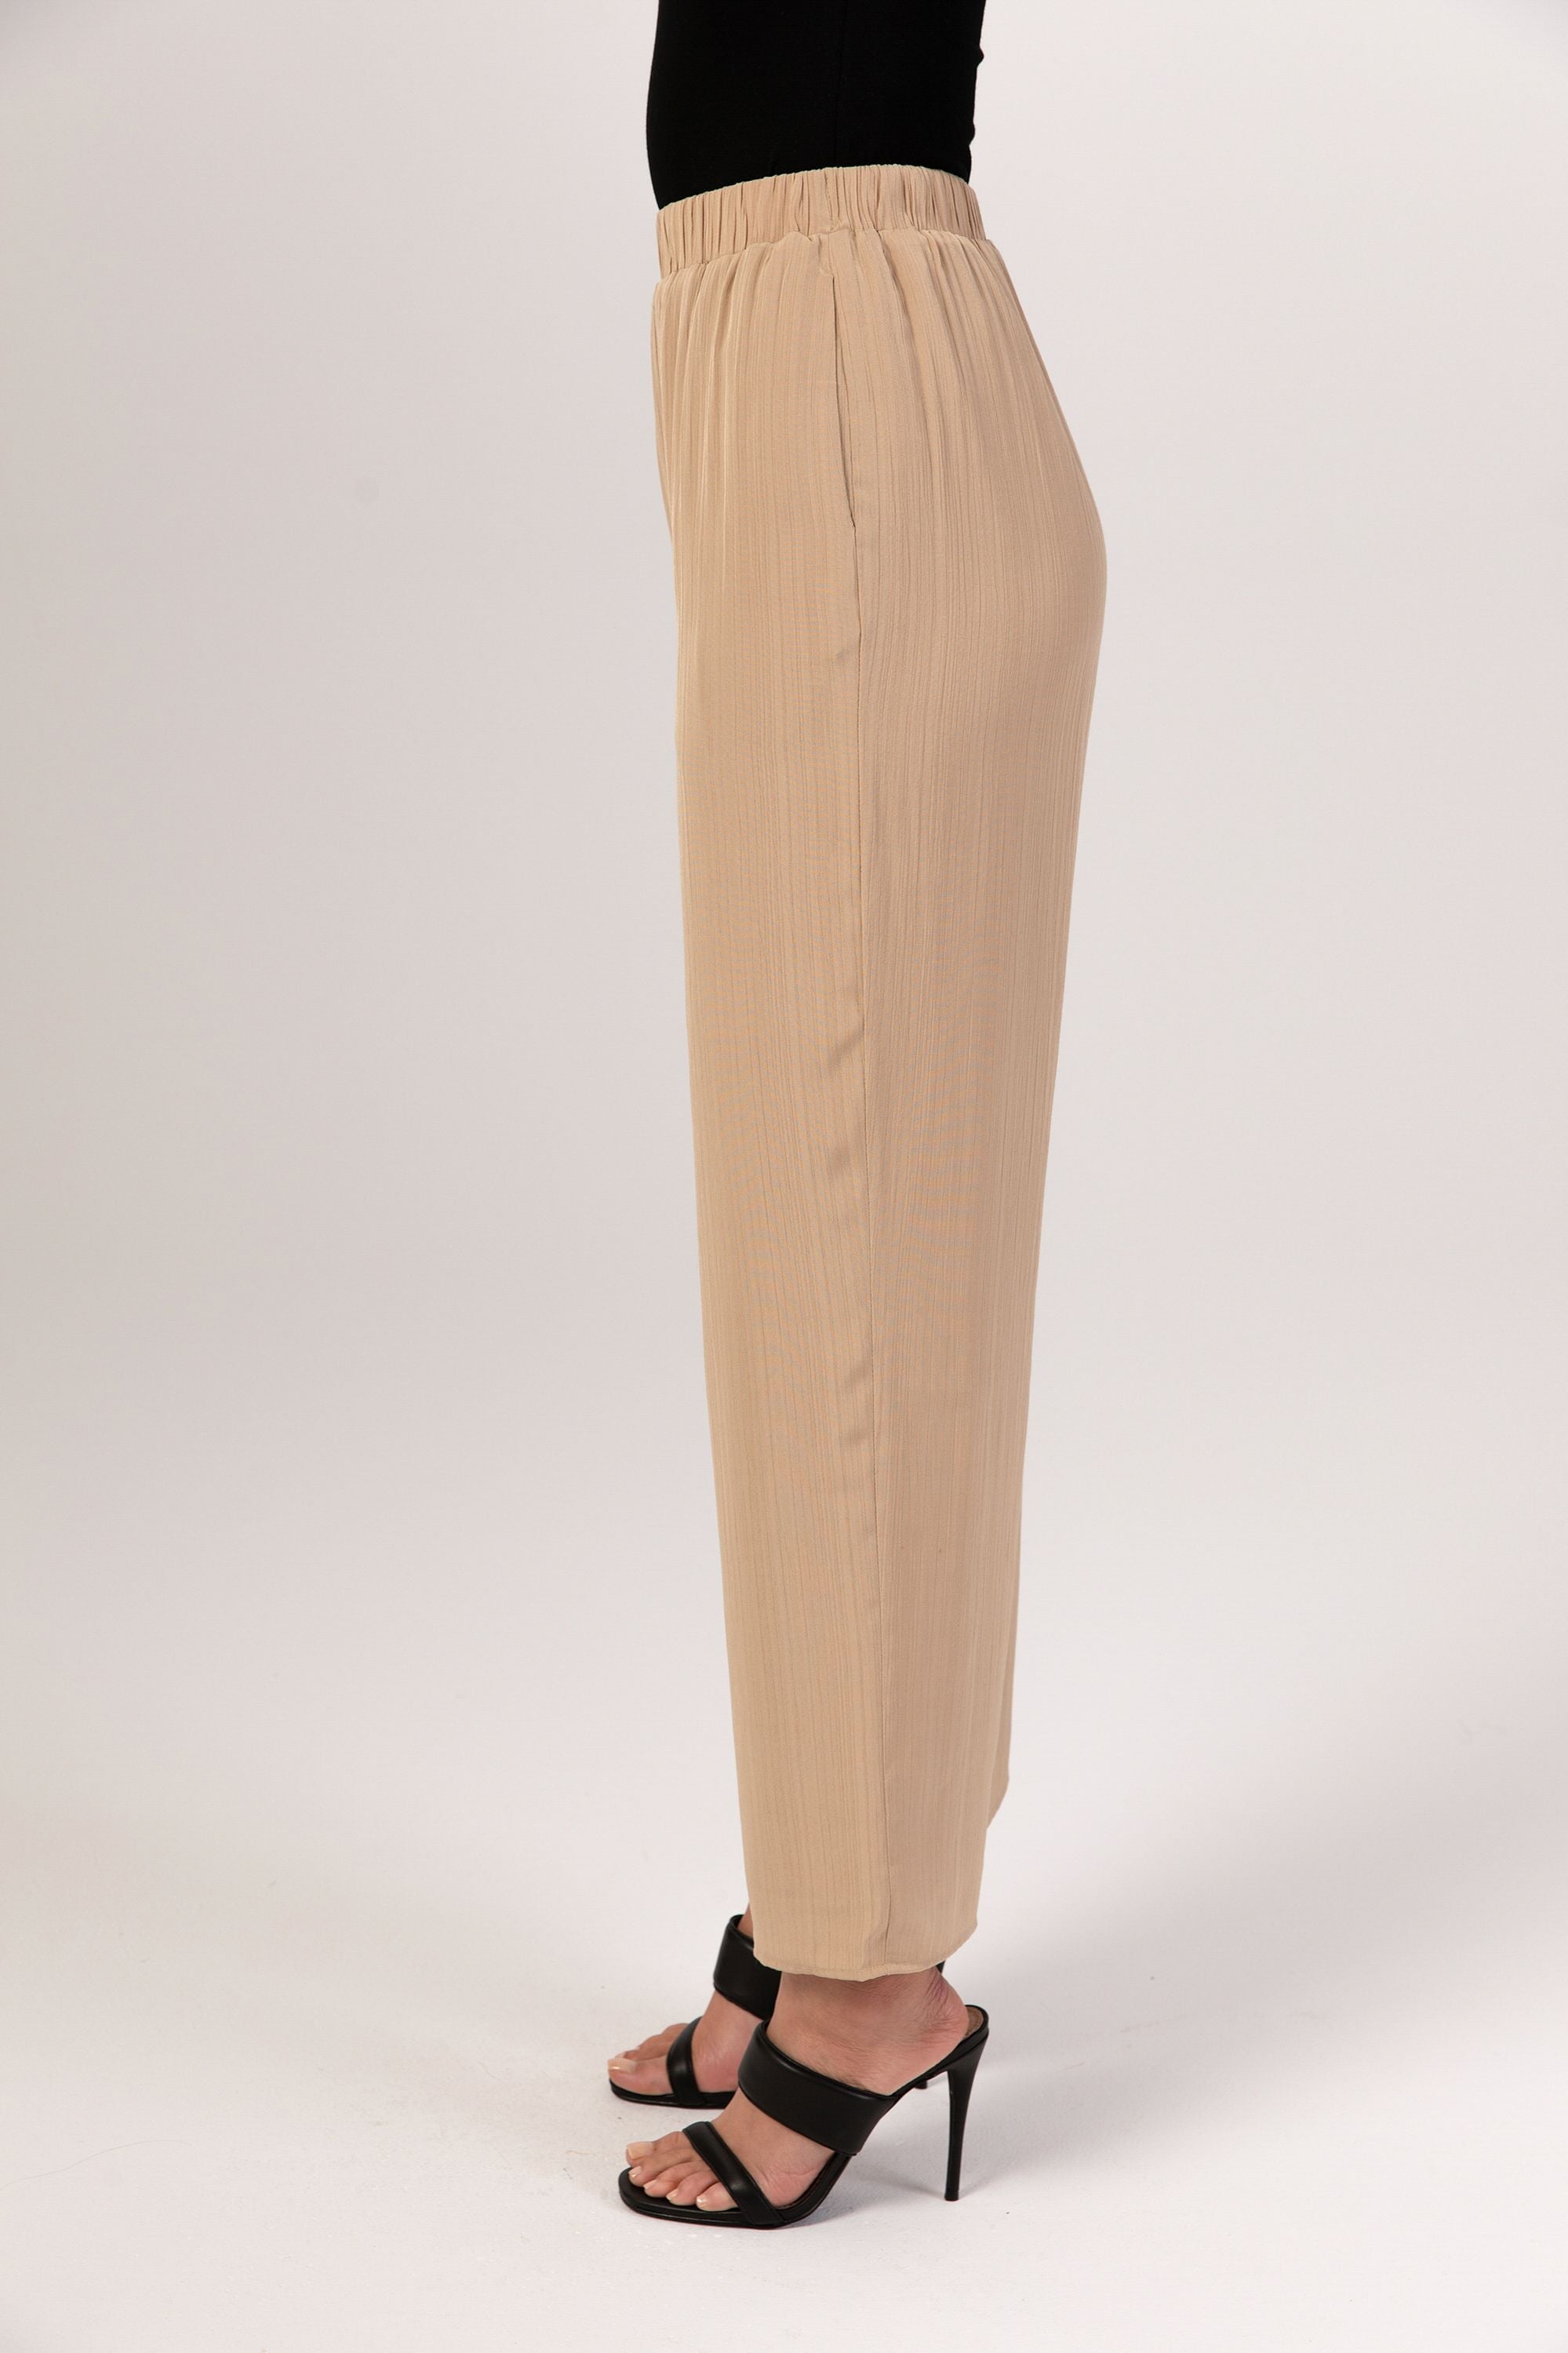 Nashwa Textured Rayon Wide Leg Pants - Caffe Veiled 